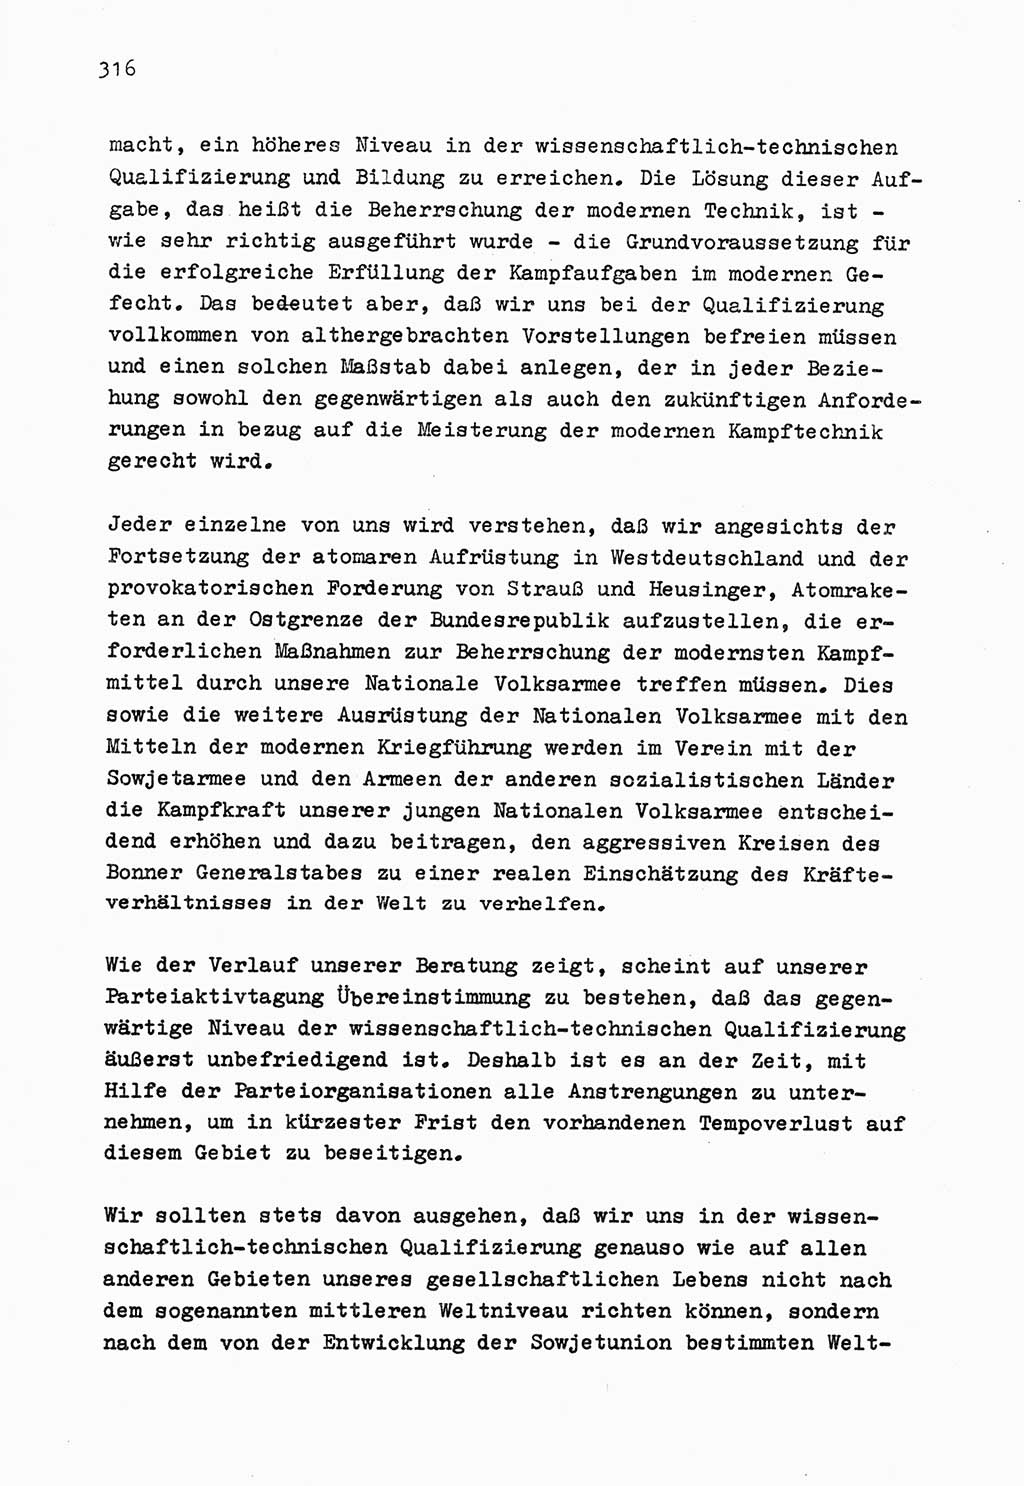 Zu Fragen der Parteiarbeit [Sozialistische Einheitspartei Deutschlands (SED) Deutsche Demokratische Republik (DDR)] 1979, Seite 316 (Fr. PA SED DDR 1979, S. 316)